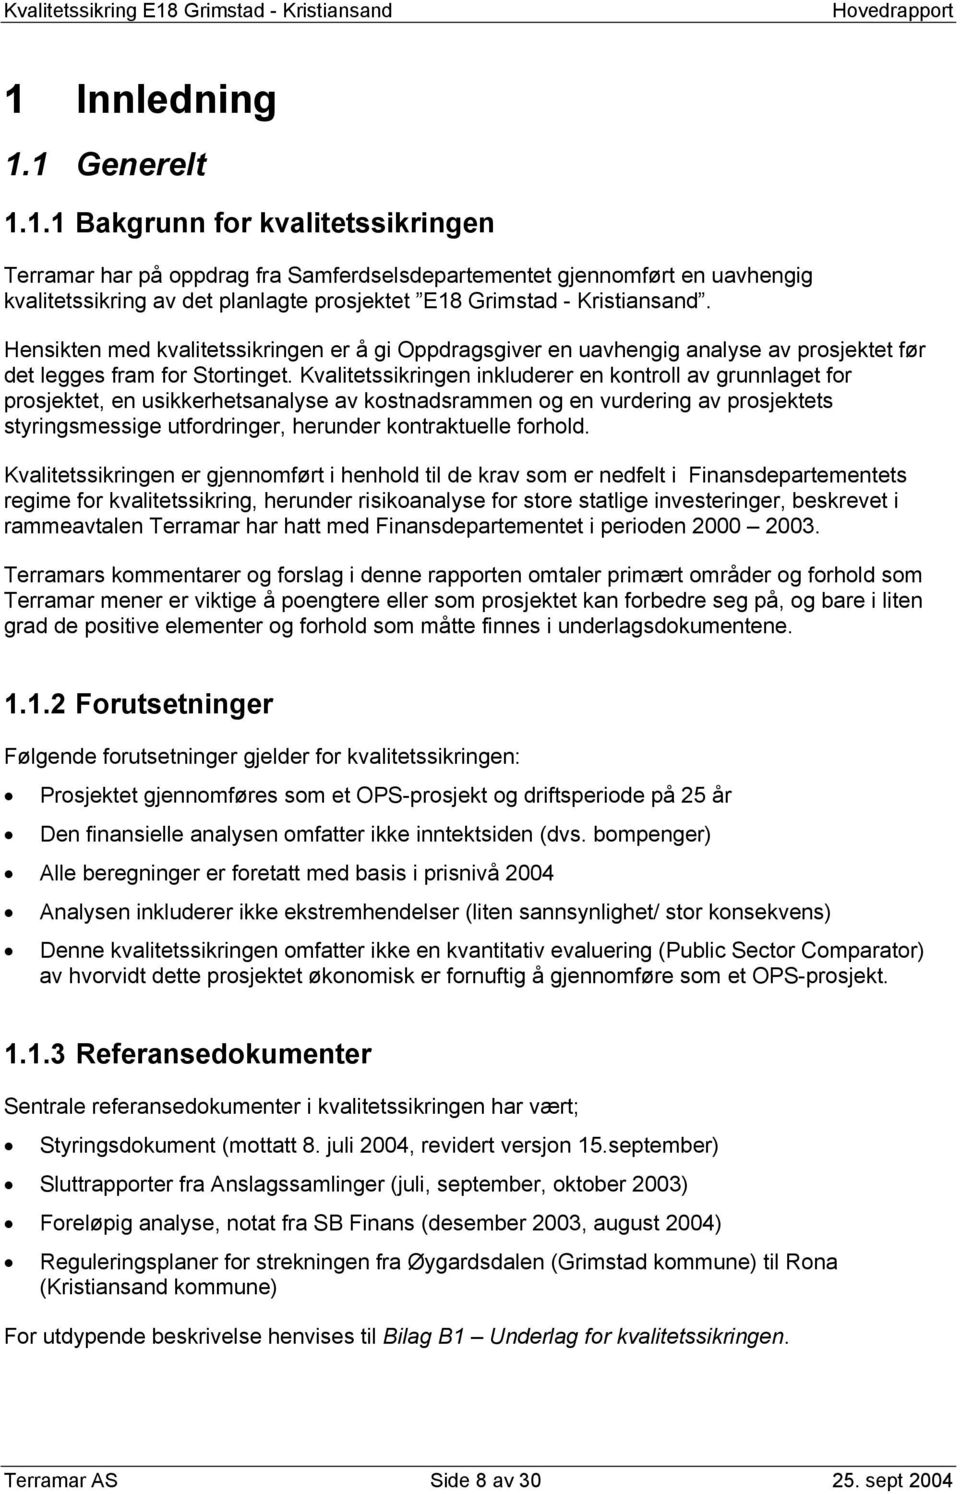 Innledning 1.1 Generelt 1.1.1 Bakgrunn for kvalitetssikringen Terramar har på oppdrag fra Samferdselsdepartementet gjennomført en uavhengig kvalitetssikring av det planlagte prosjektet E18 Grimstad - Kristiansand.